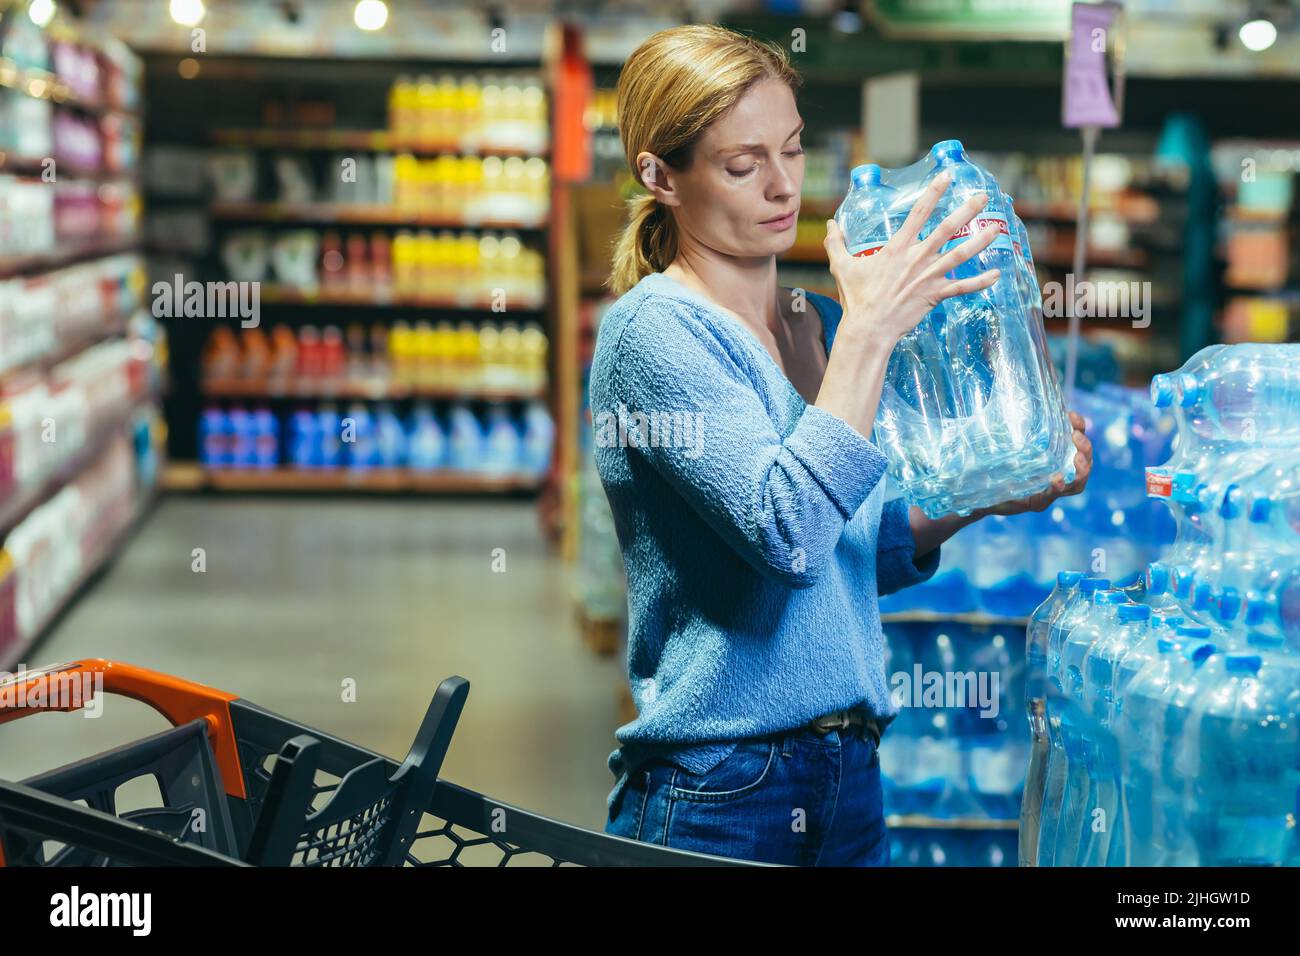 Una donna spaventata e triste in una crisi acquista acqua in un supermercato, immagazzina acqua potabile Foto Stock